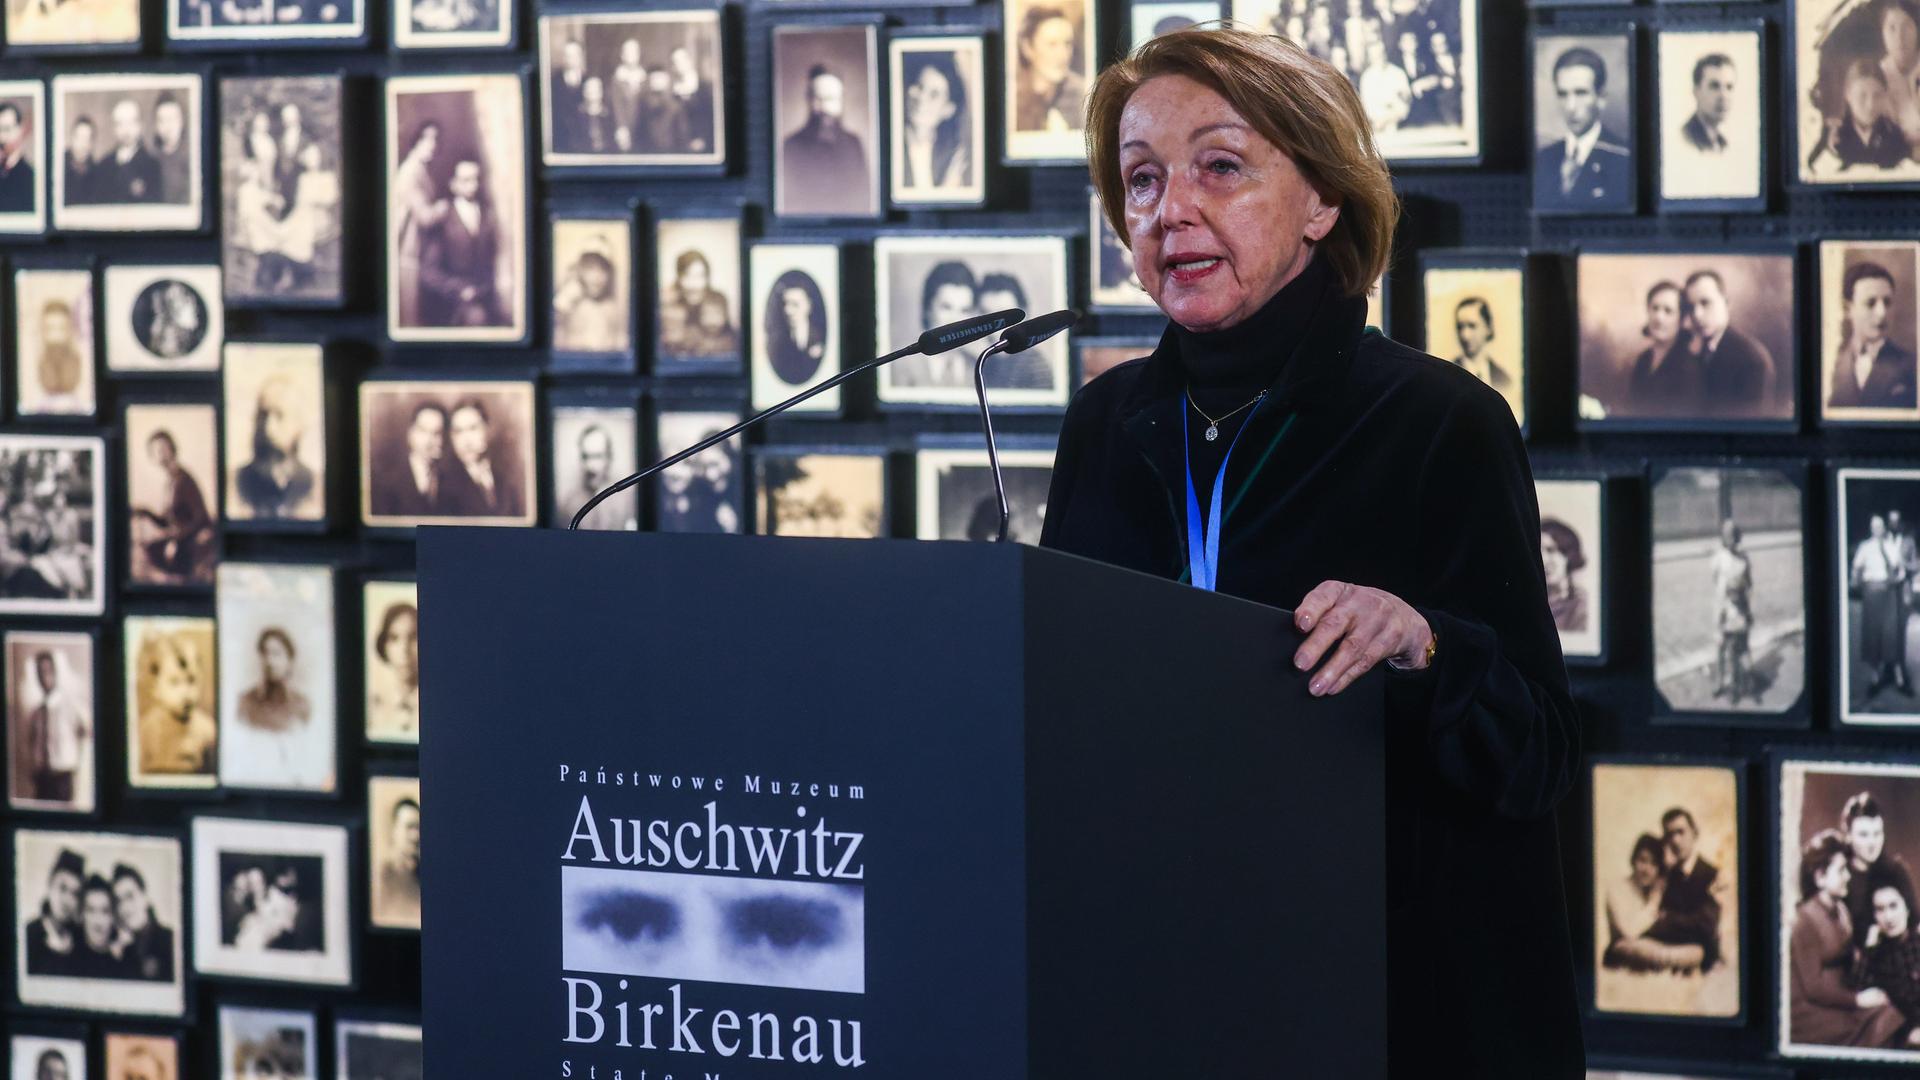 Eva Umlauf steht vor einer Wand mit Schwarz-weiß-Porträtfotos an einem Rednerpult mit der Aufschrift "Auschwitz Birkenau".